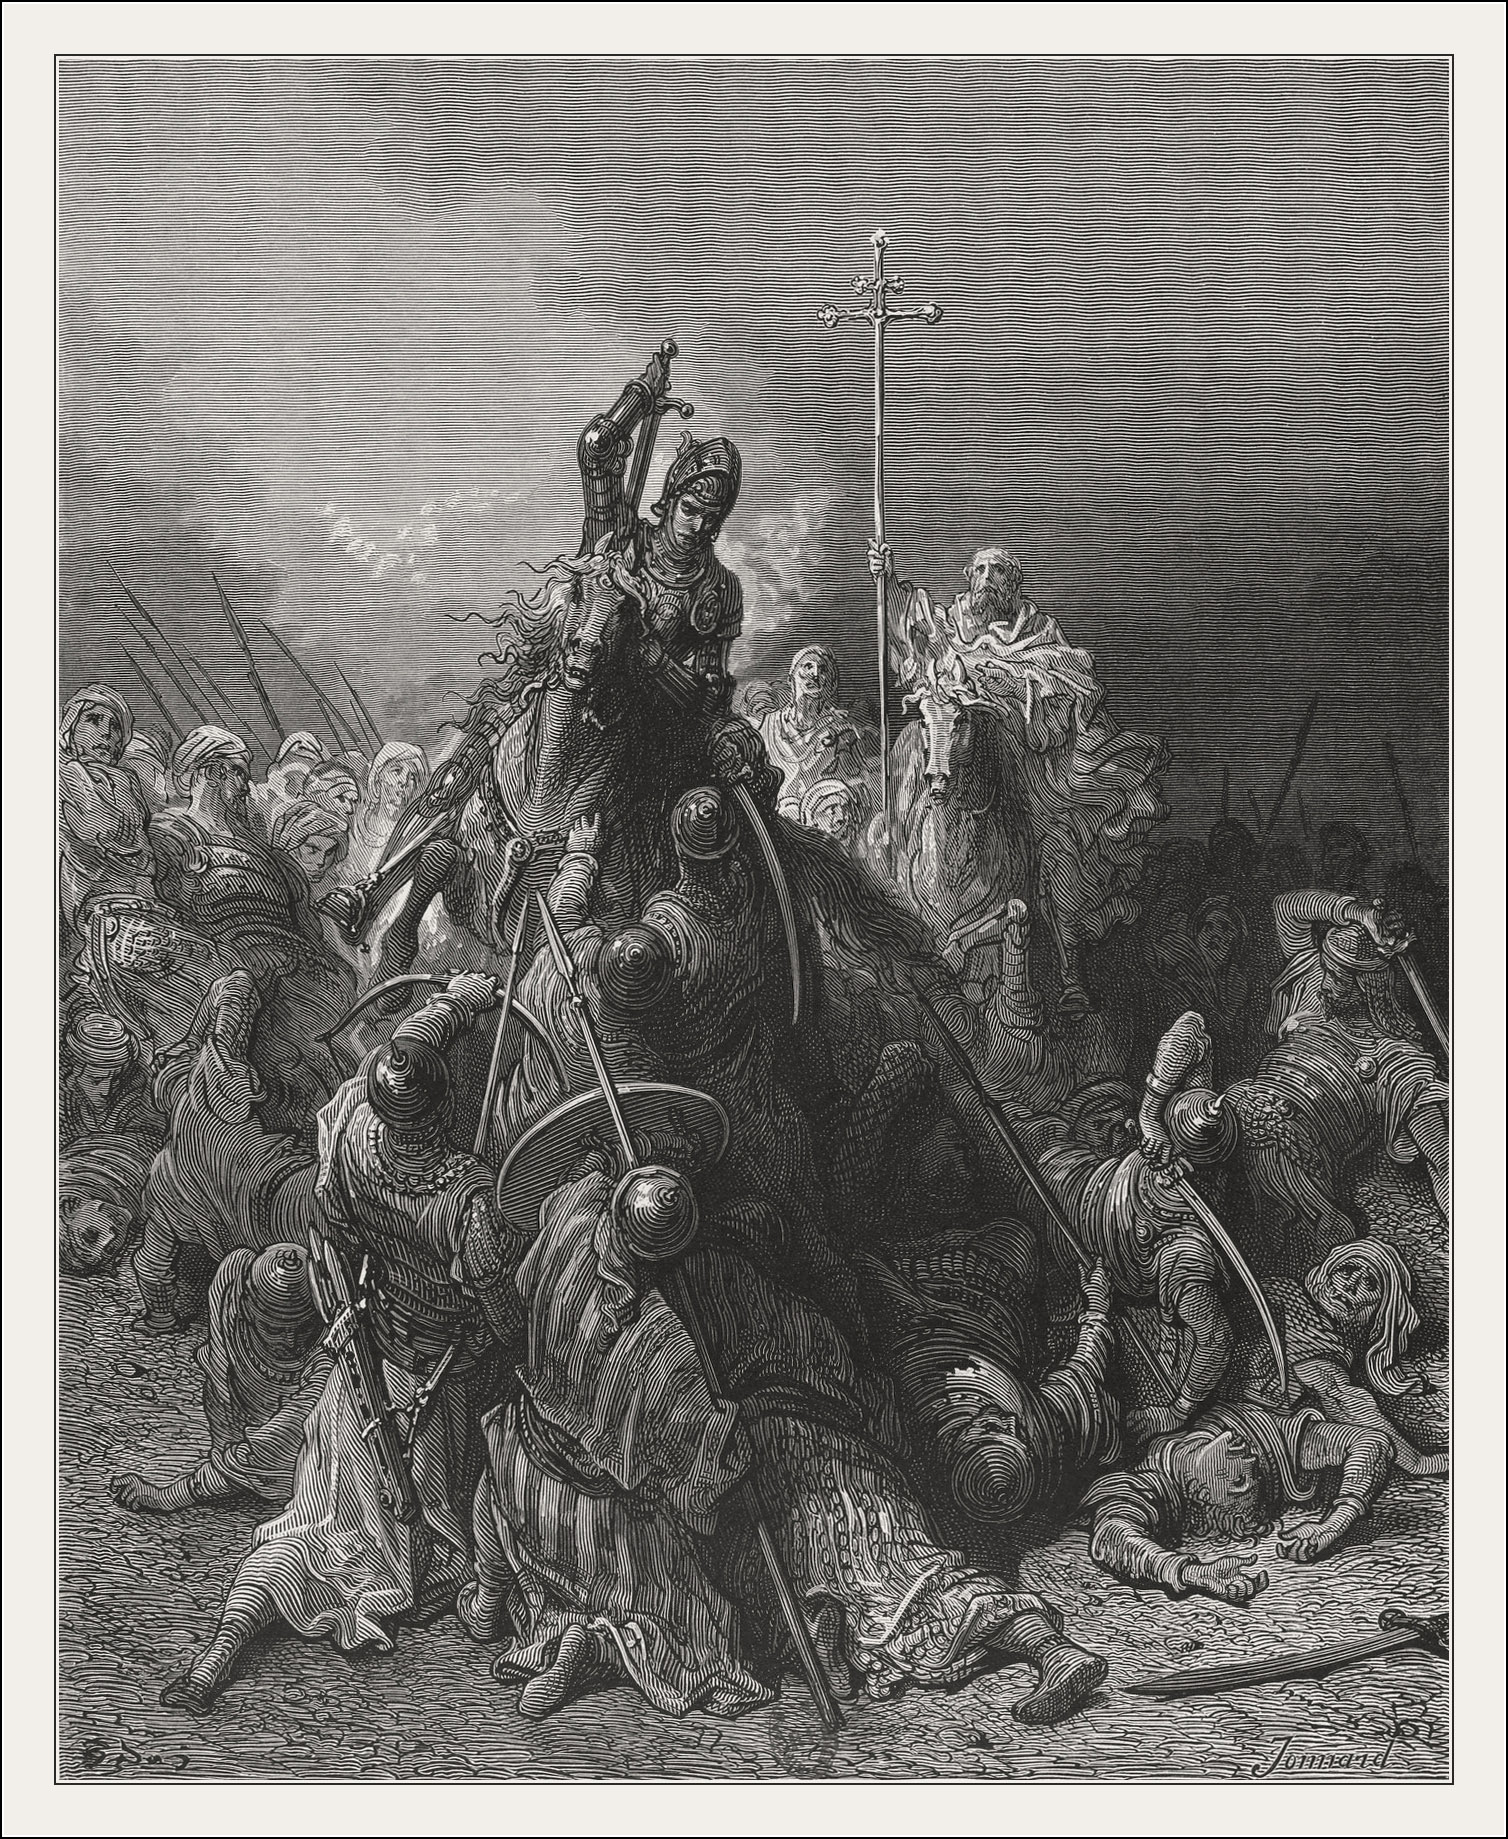 Gustave Doré, Histoire des croisades